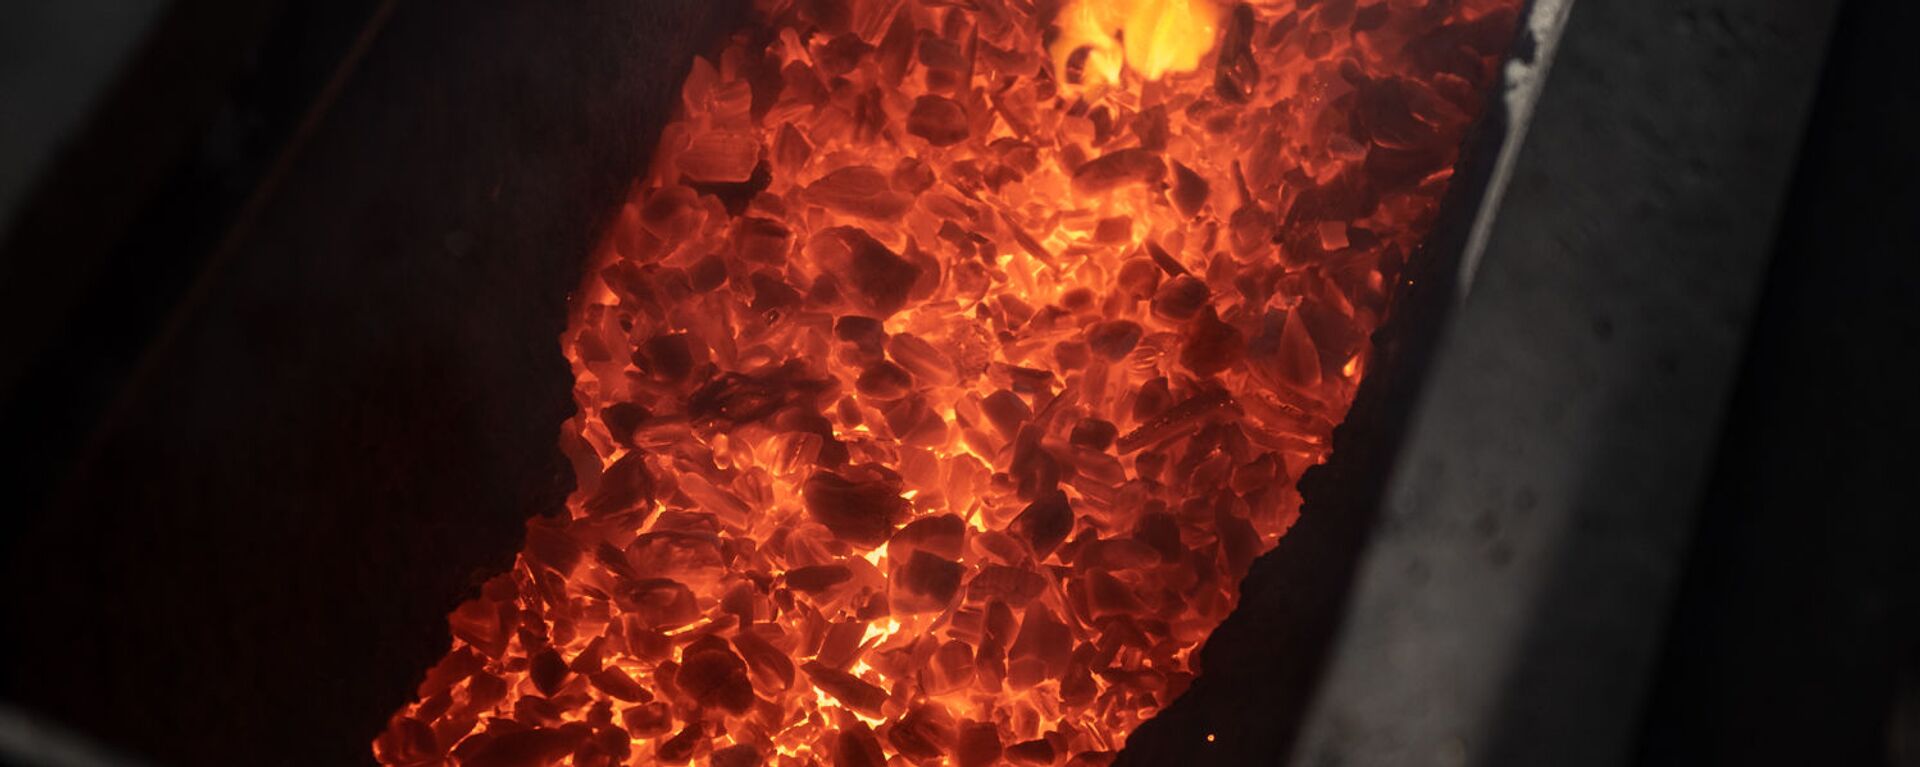 Медеплавильная печь на кабельном заводе Ин-Ви Лайн - Sputnik Армения, 1920, 02.10.2021